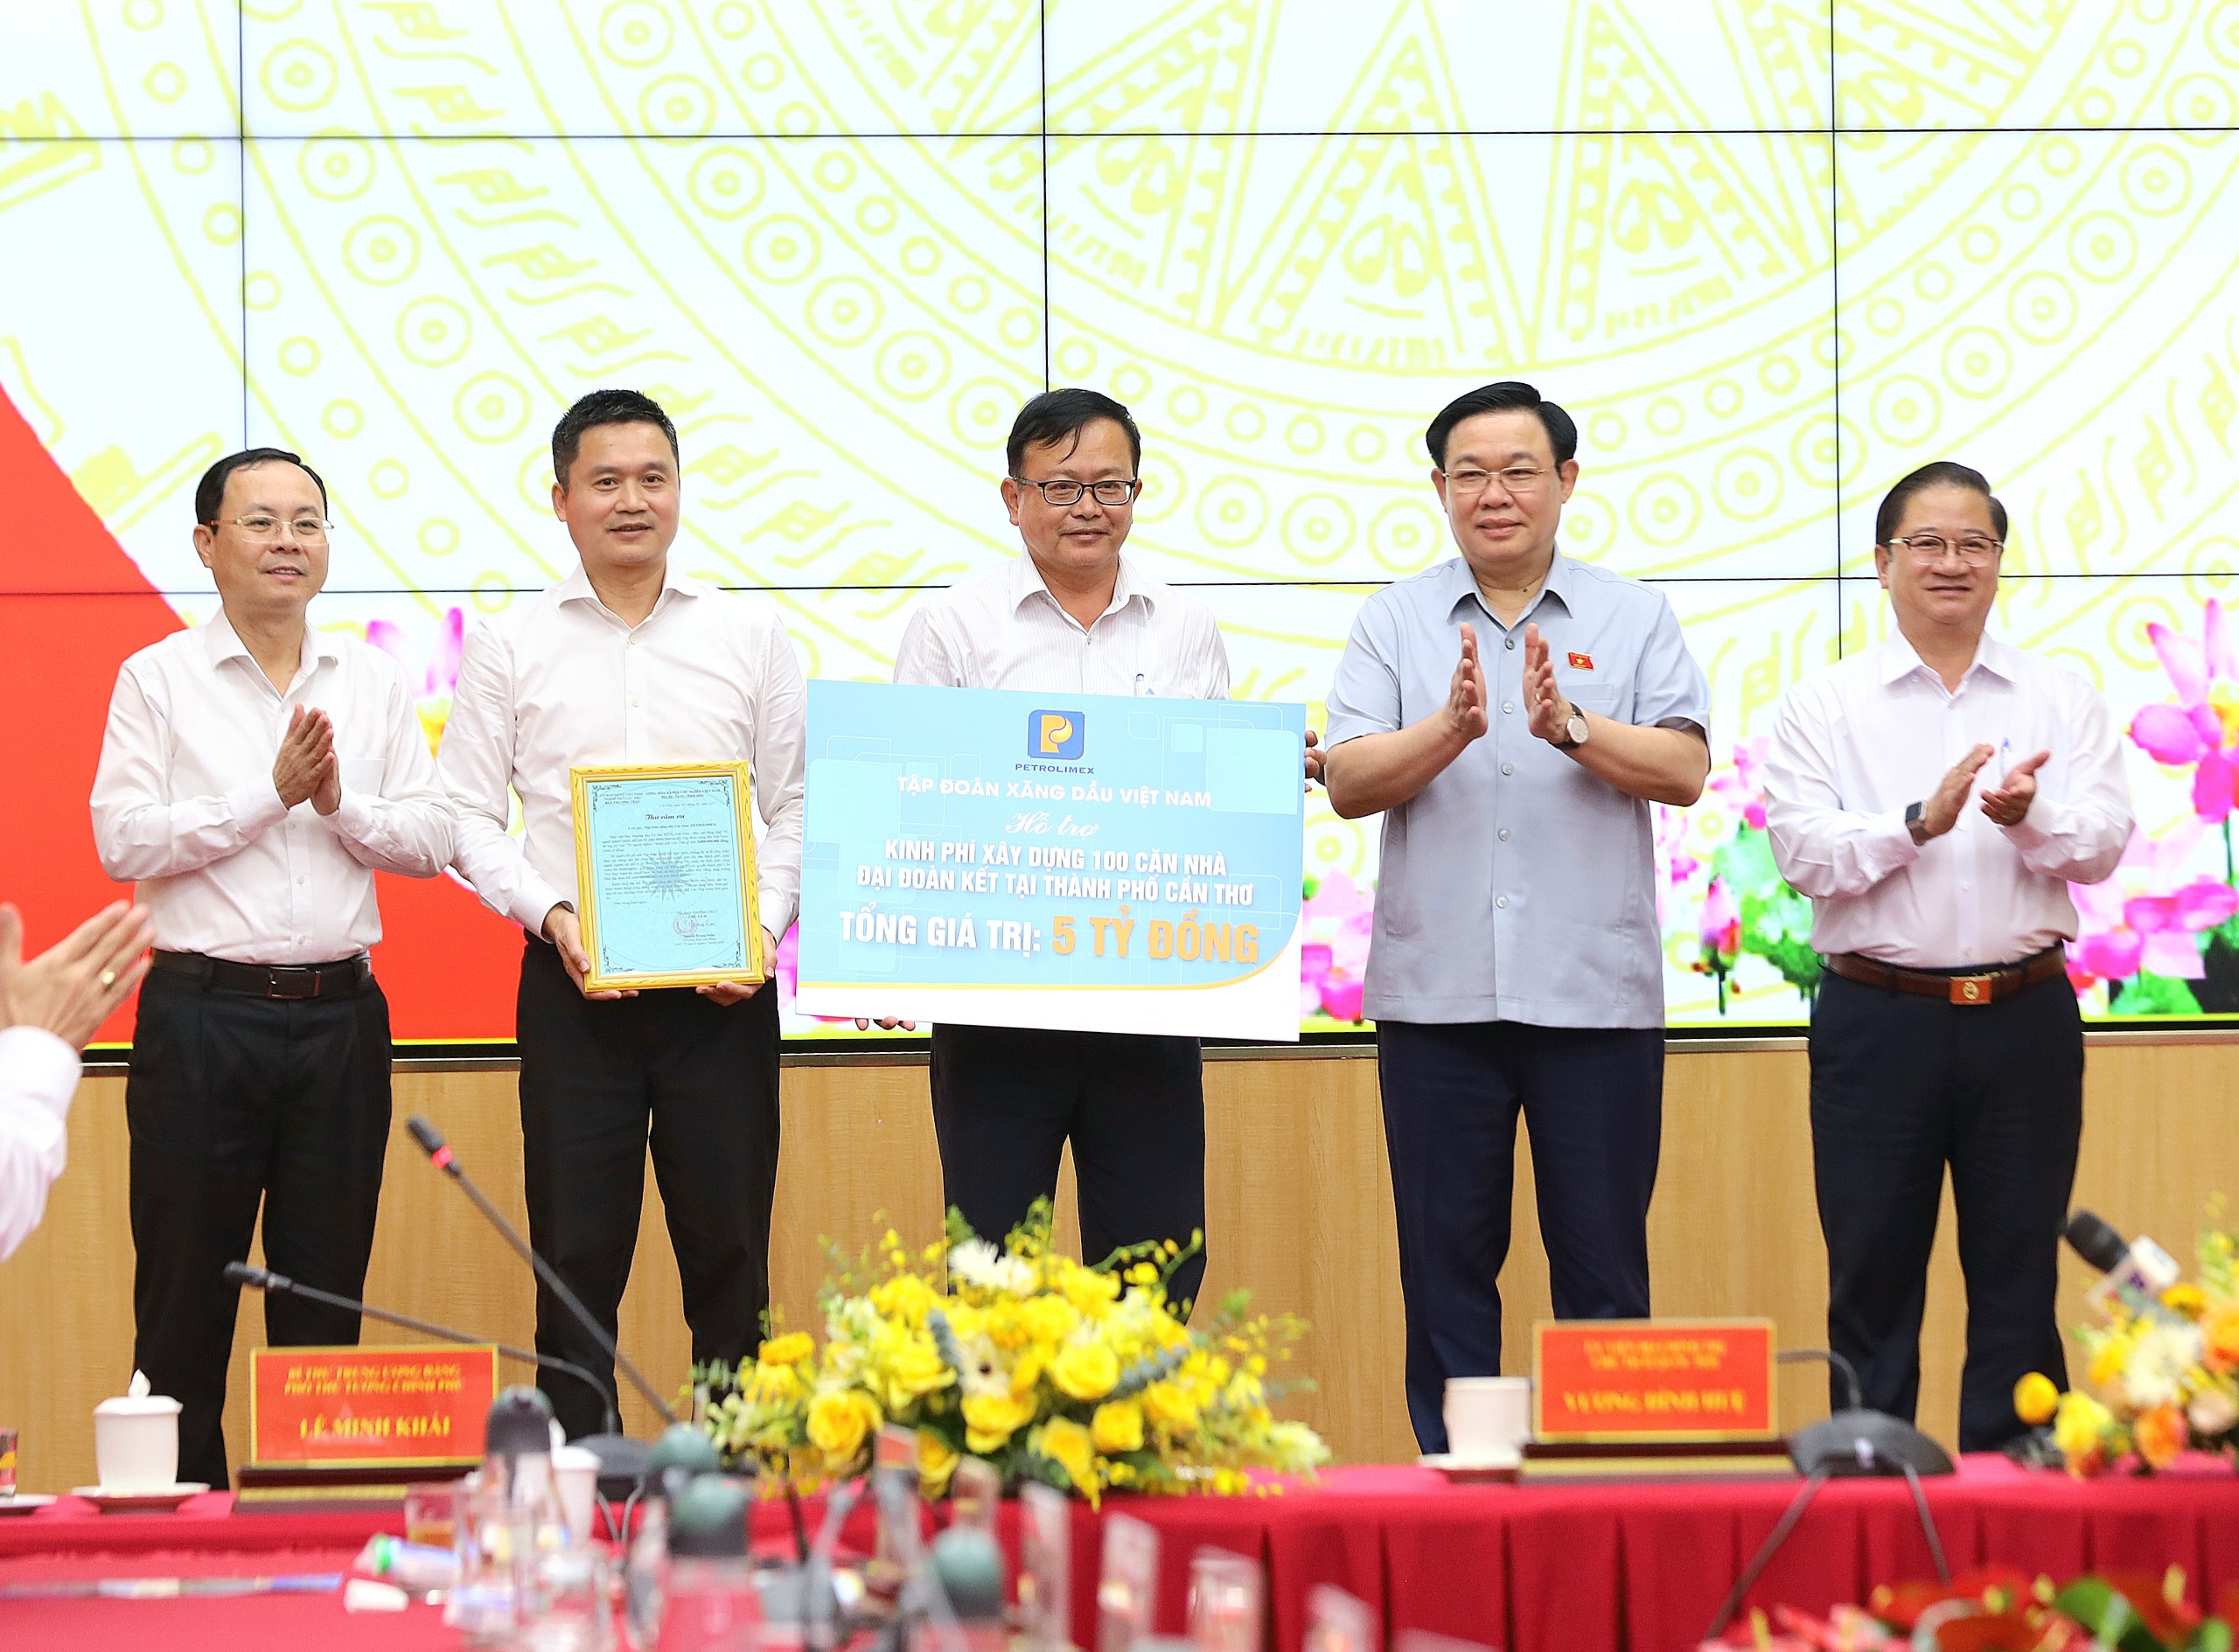 Chủ tịch Quốc hội Vương Đình Huệ chứng kiến Tập đoàn Xăng dầu Việt Nam trao bảng tượng trưng tặng 5 tỷ đồng hỗ trợ xây dựng 100 căn nhà đại đoàn kết cho hộ nghèo, cận nghèo, hộ đặc biệt khó khăn về nhà ở trên địa bàn TP. Cần Thơ.